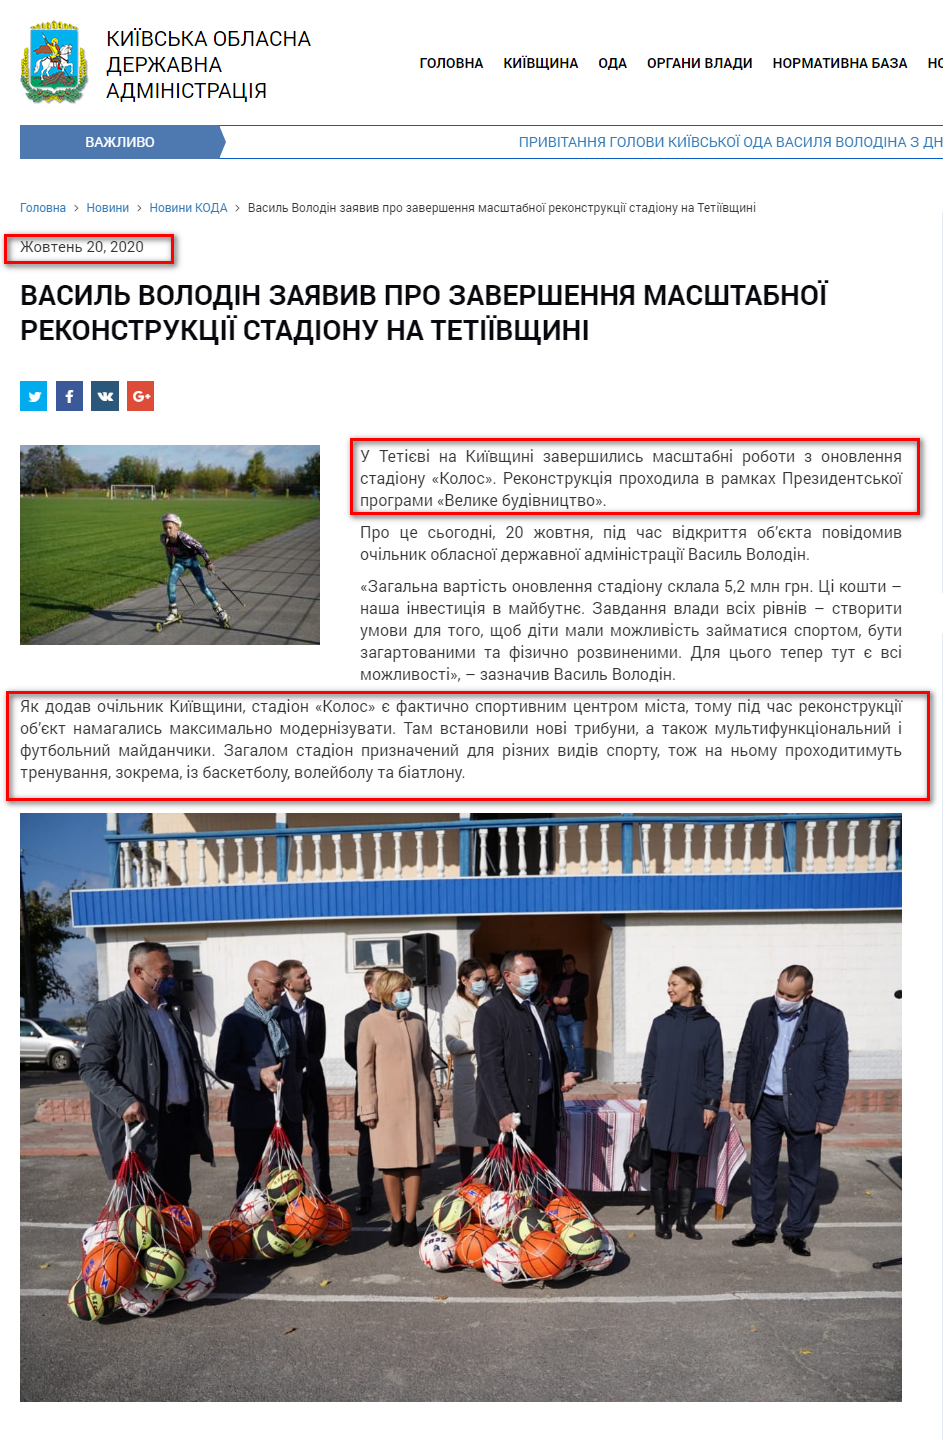 http://koda.gov.ua/news/vasil-volodin-zayaviv-pro-zavershennya/